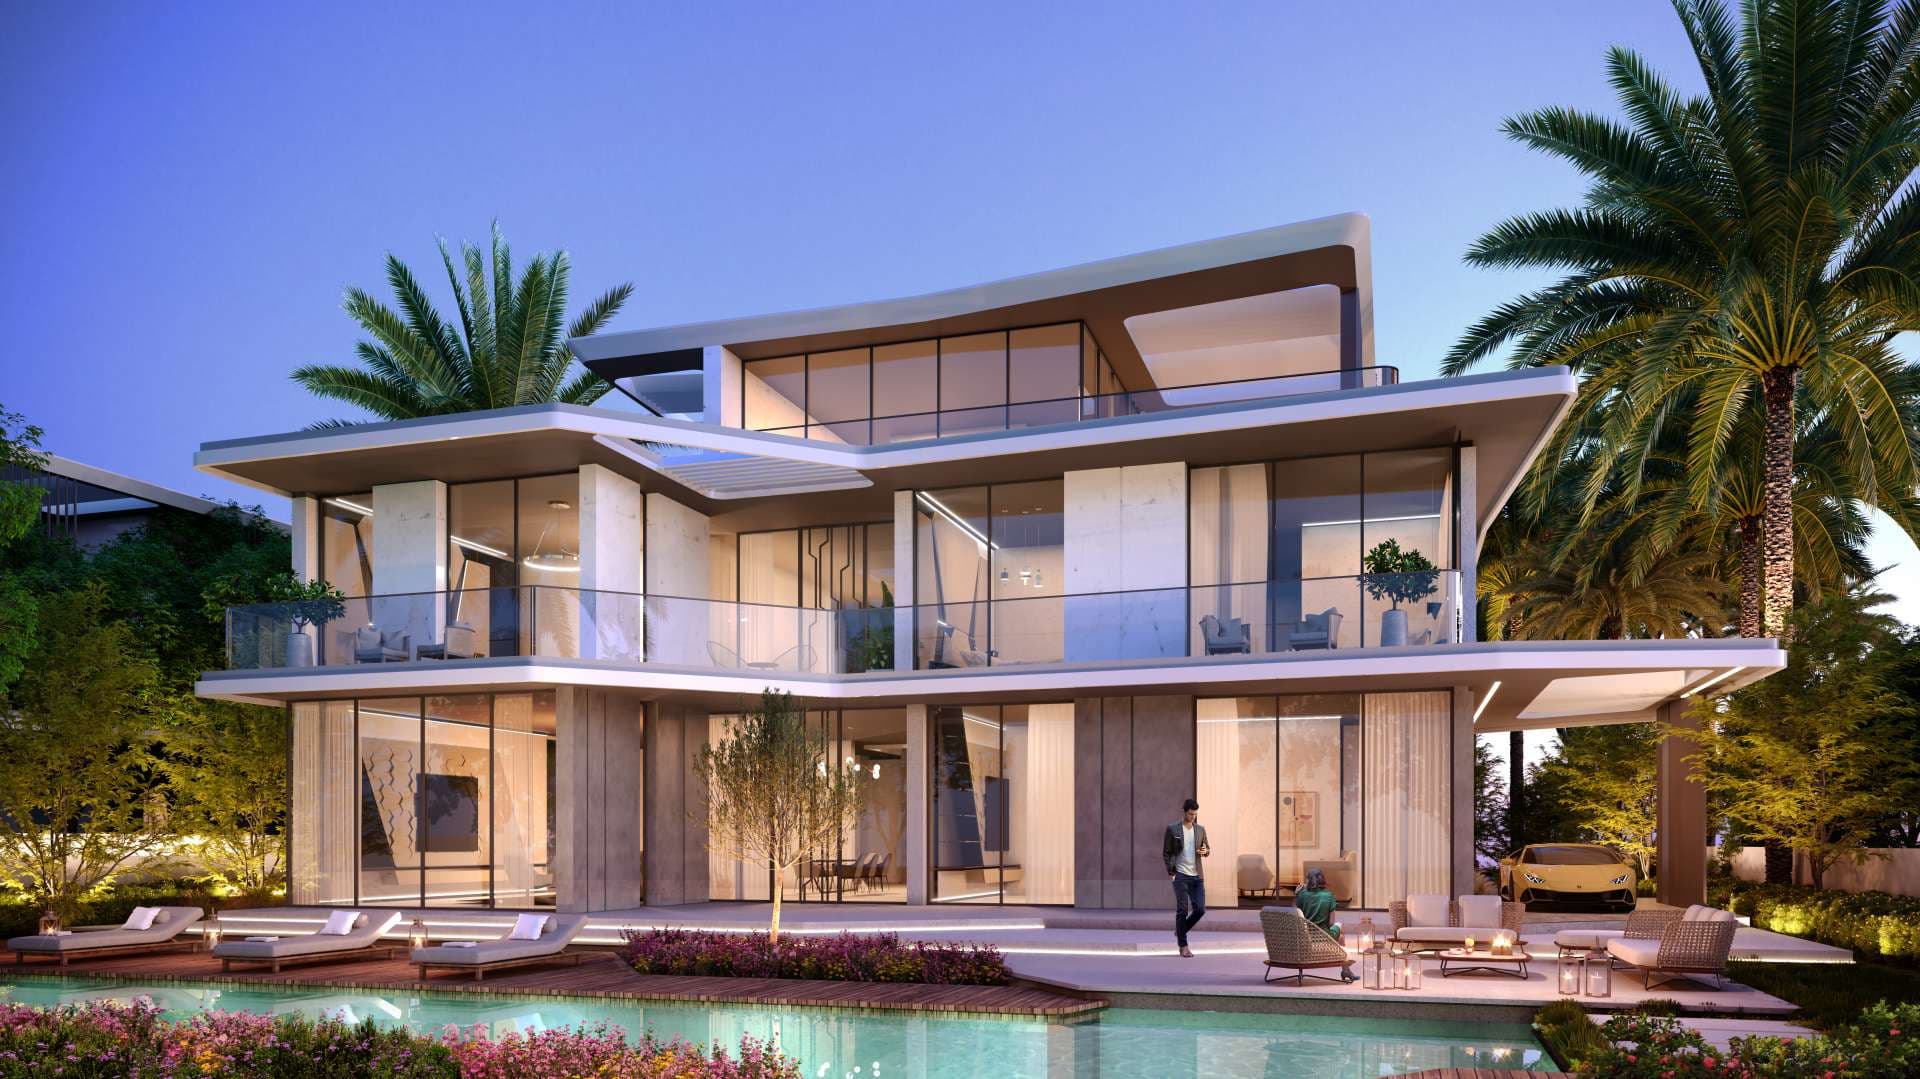 6 Bedroom Villa For Sale Dubai Hills Vista Lp07560 10633956a54d1600.jpg